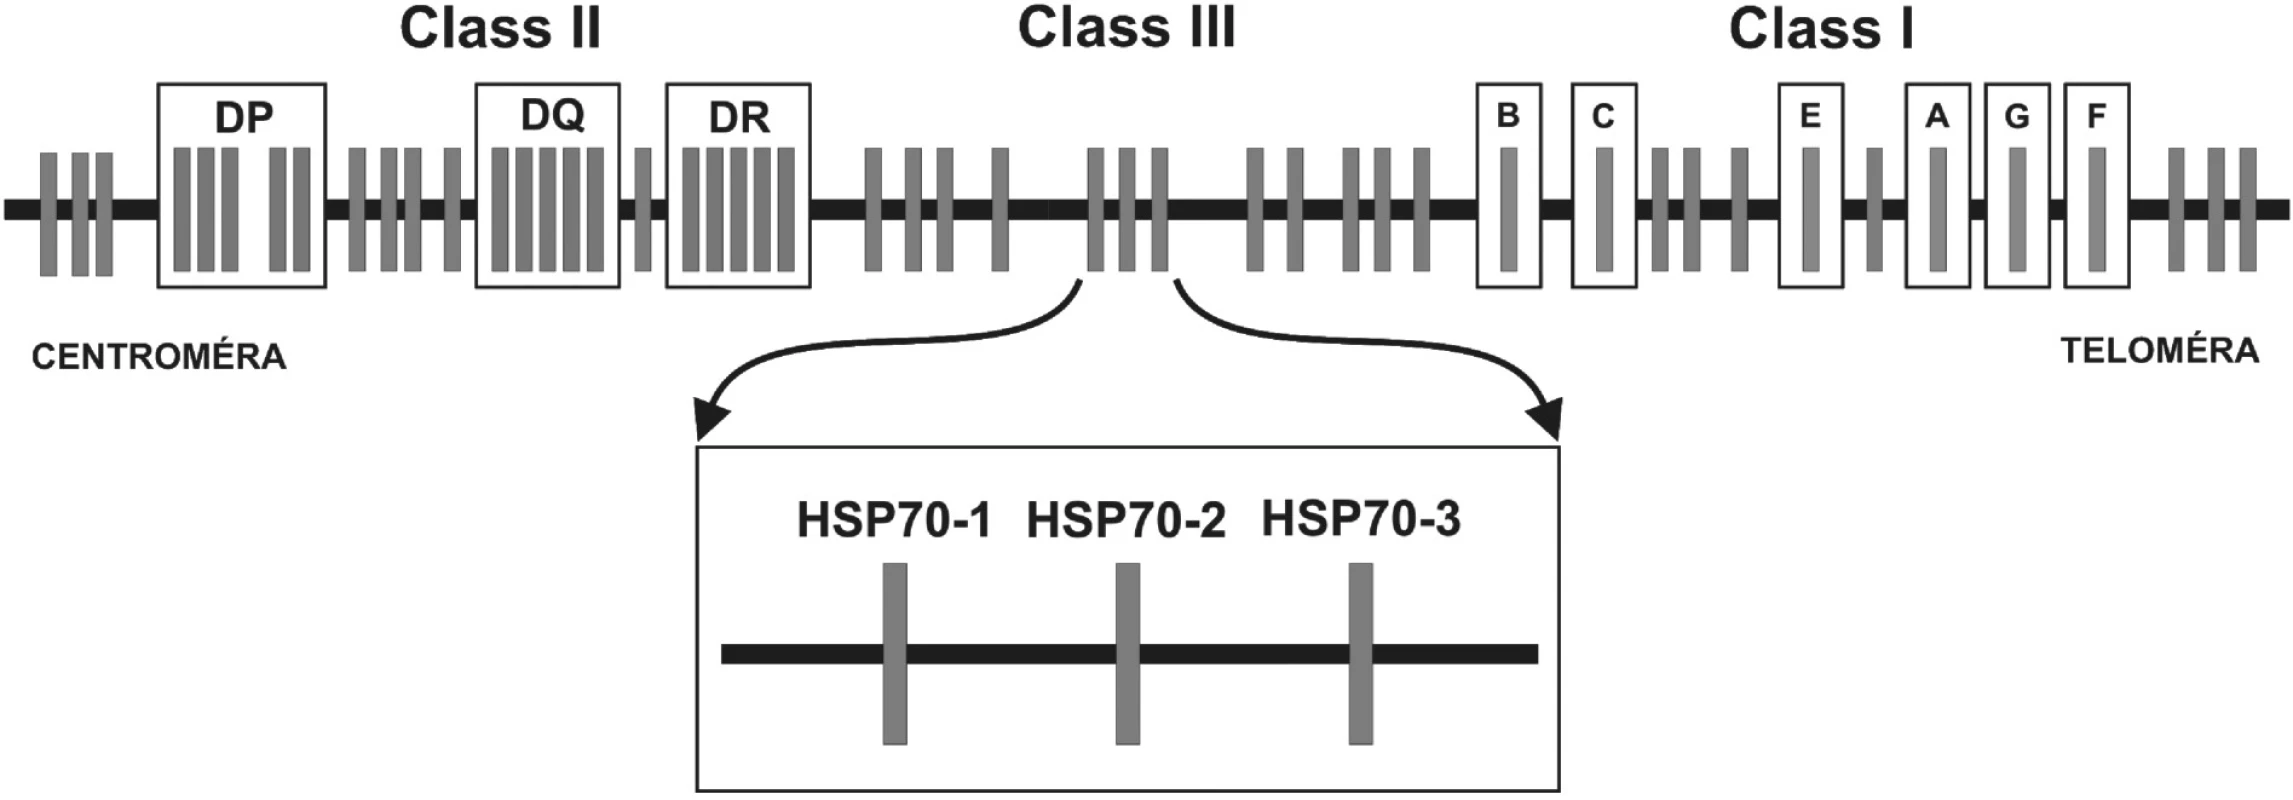 Obr. 2. Génová mapa MHC: 
Hlavný histokompatibilný komplex človeka sa nazýva Human Leukocyte Antigens. Delí sa na oblasti MHC molekúl I. a II. triedy (u človeka HLA-antigény I. triedy a II. triedy) a tzv. “non class I/II MHC“ molekuly. Medzi MHC antigény I. triedy patria gény, ktoré sú zapojené do endogénnej cesty prezentácie antigénu a smerom od teloméry umiestnené v poradí: HLA-F, -G, -A, -E, -C a –B. Gény lokusov umiestnených centromericky – HLA-DR, DQ, DP – kódujú MHC antigény II. triedy, ktoré sú zapojené do exogénnej cesty prezentácie antigénu. Gény oblasti nachádzajúcej sa medzi MHC antigénmi I. a II. triedy, sú označované ako gény “non classI/II MHC” gény. V tejto oblasti sanachádzajú okrem iných tri gény pre proteíny HSP70 (heat shock protein) – HSP70-1, HSP70-2 a HSP70-3.